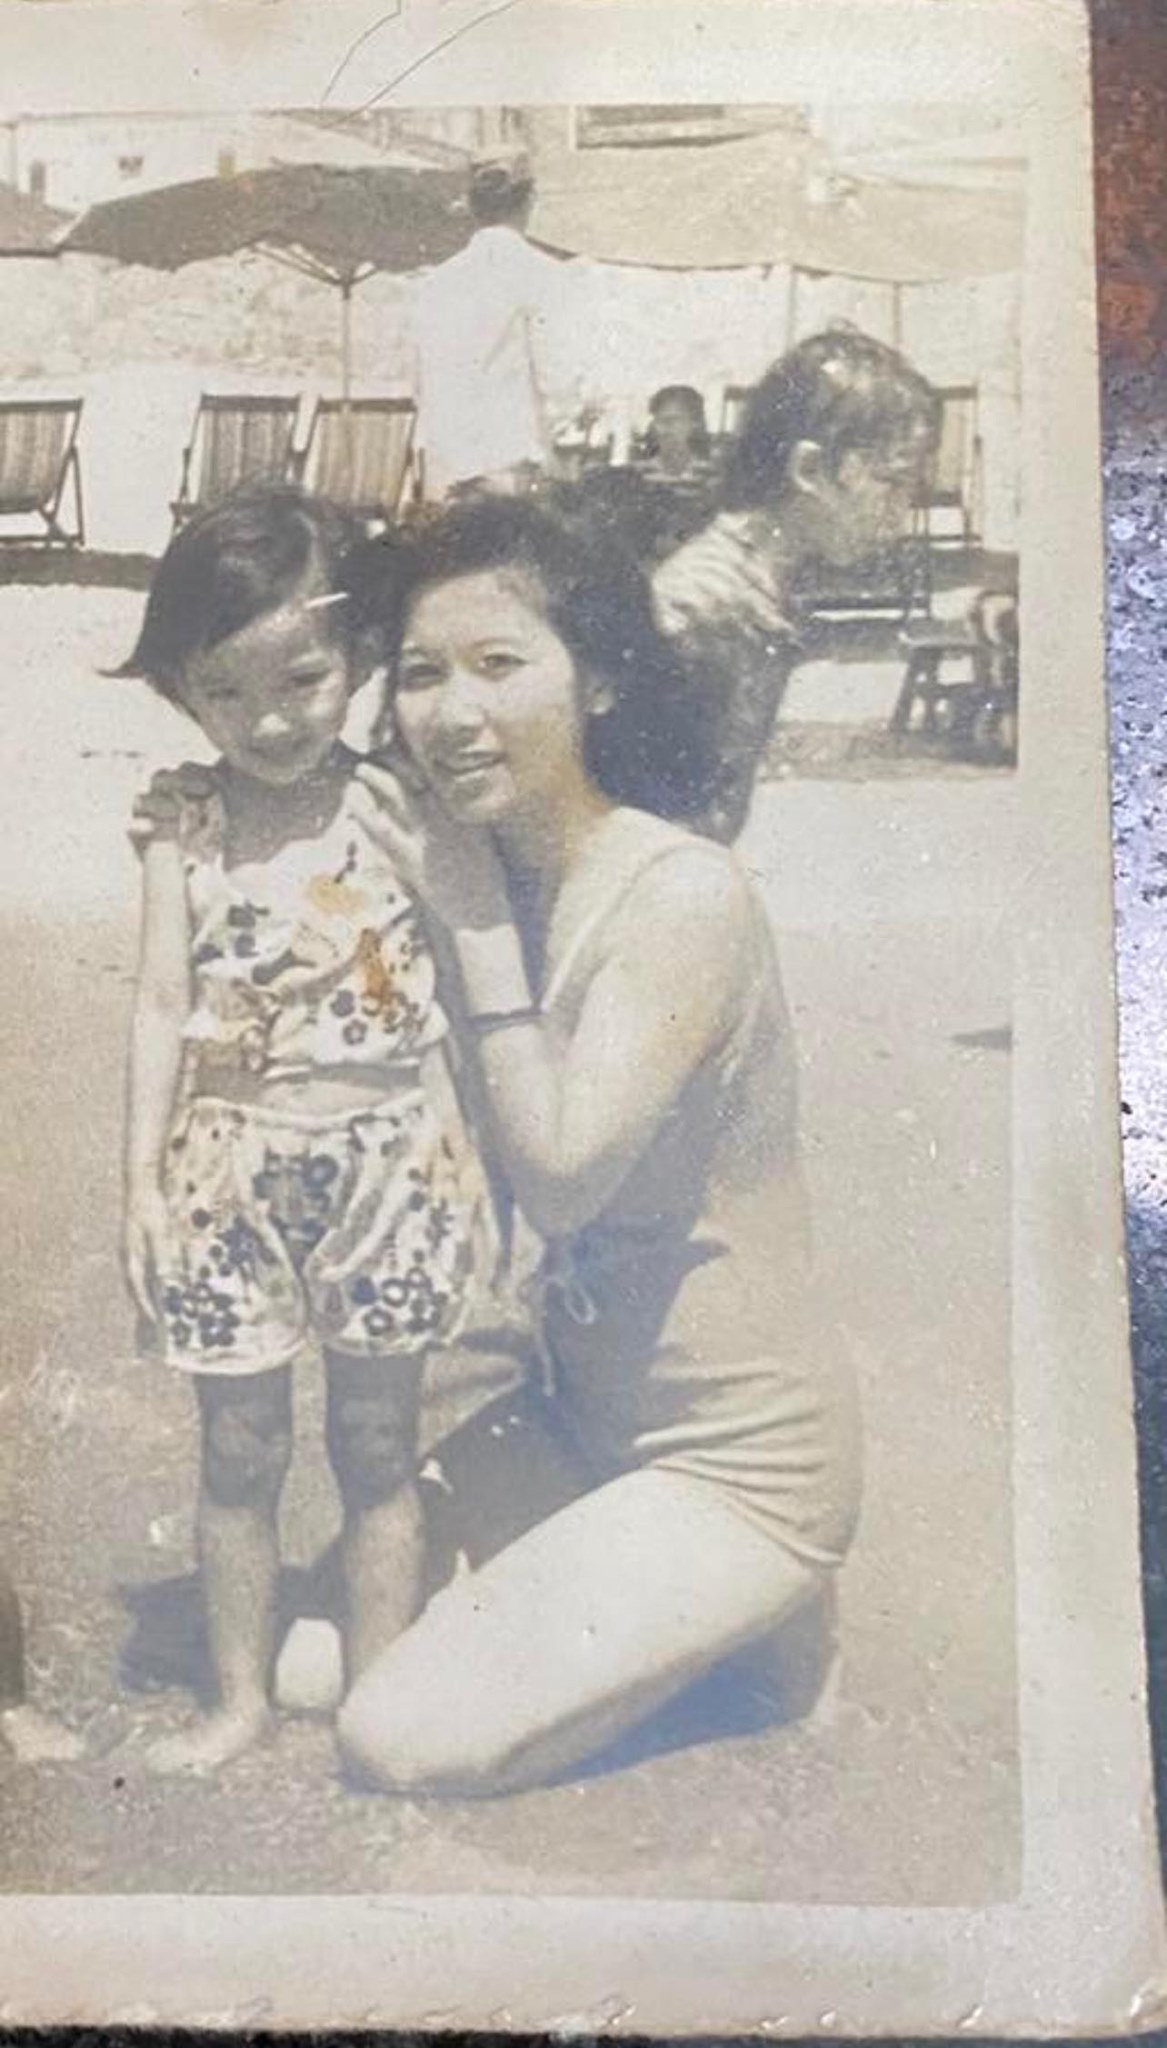 Sau 1 năm mất mẹ, Kim Hiền bật khóc trong ngày giỗ đầu: Nhớ, đau và nước mắt nuốt vào trong